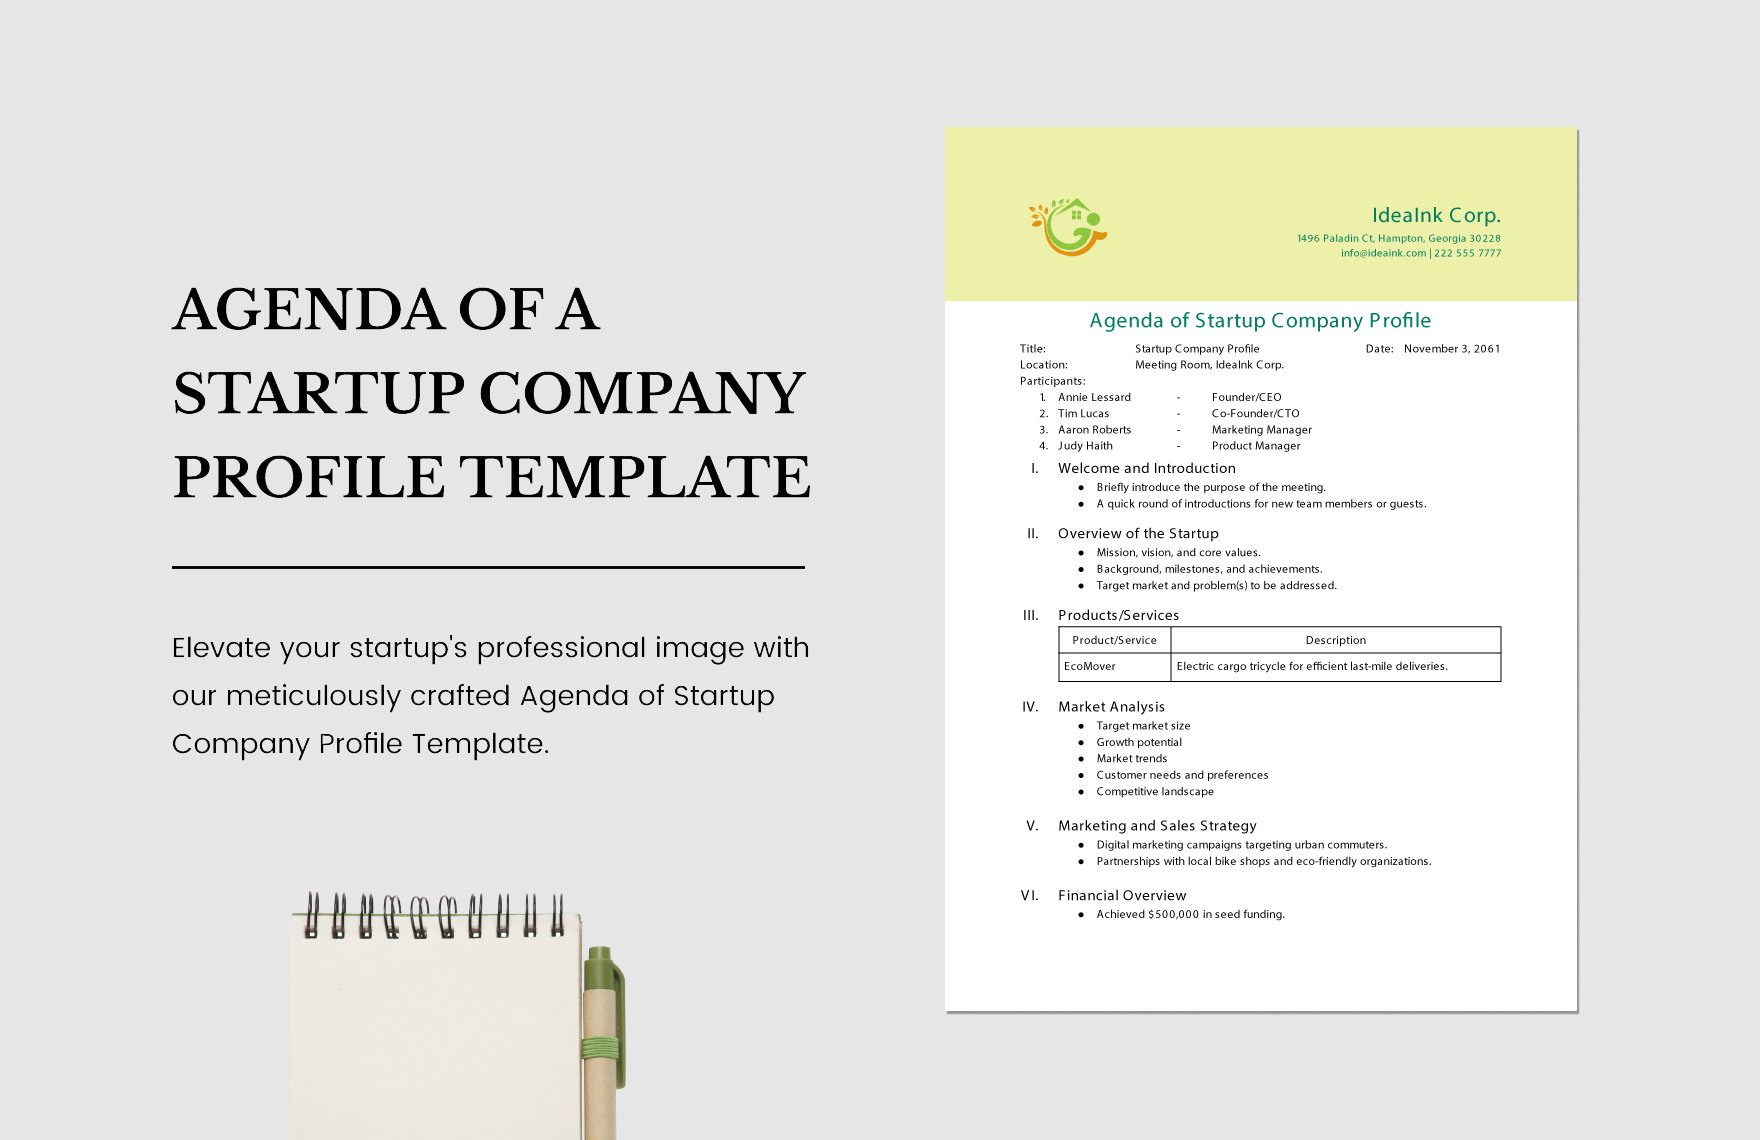 Agenda of Startup Company Profile Template